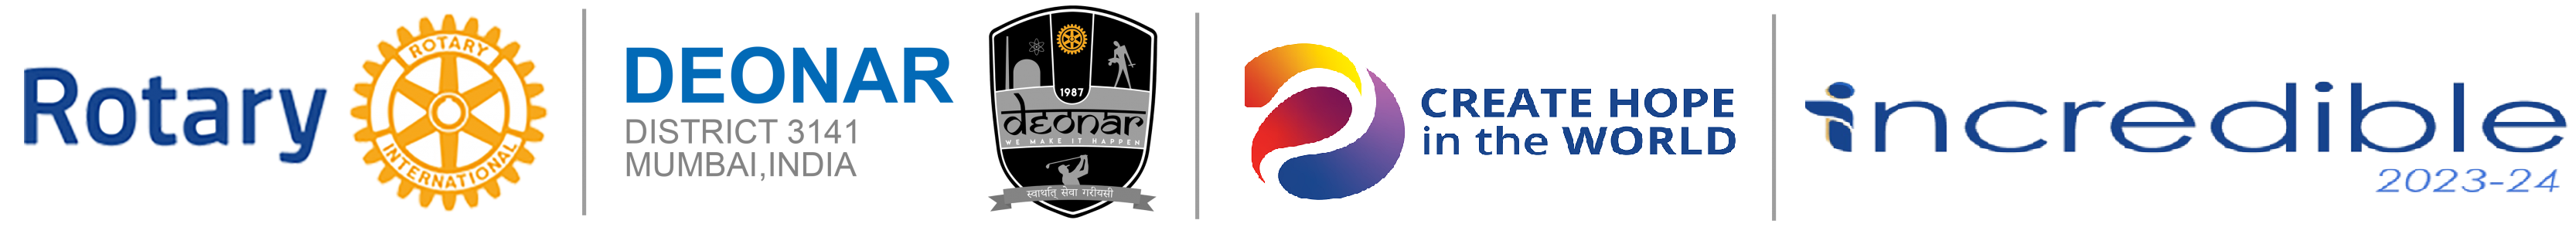 Rotary Club of Deonar logo